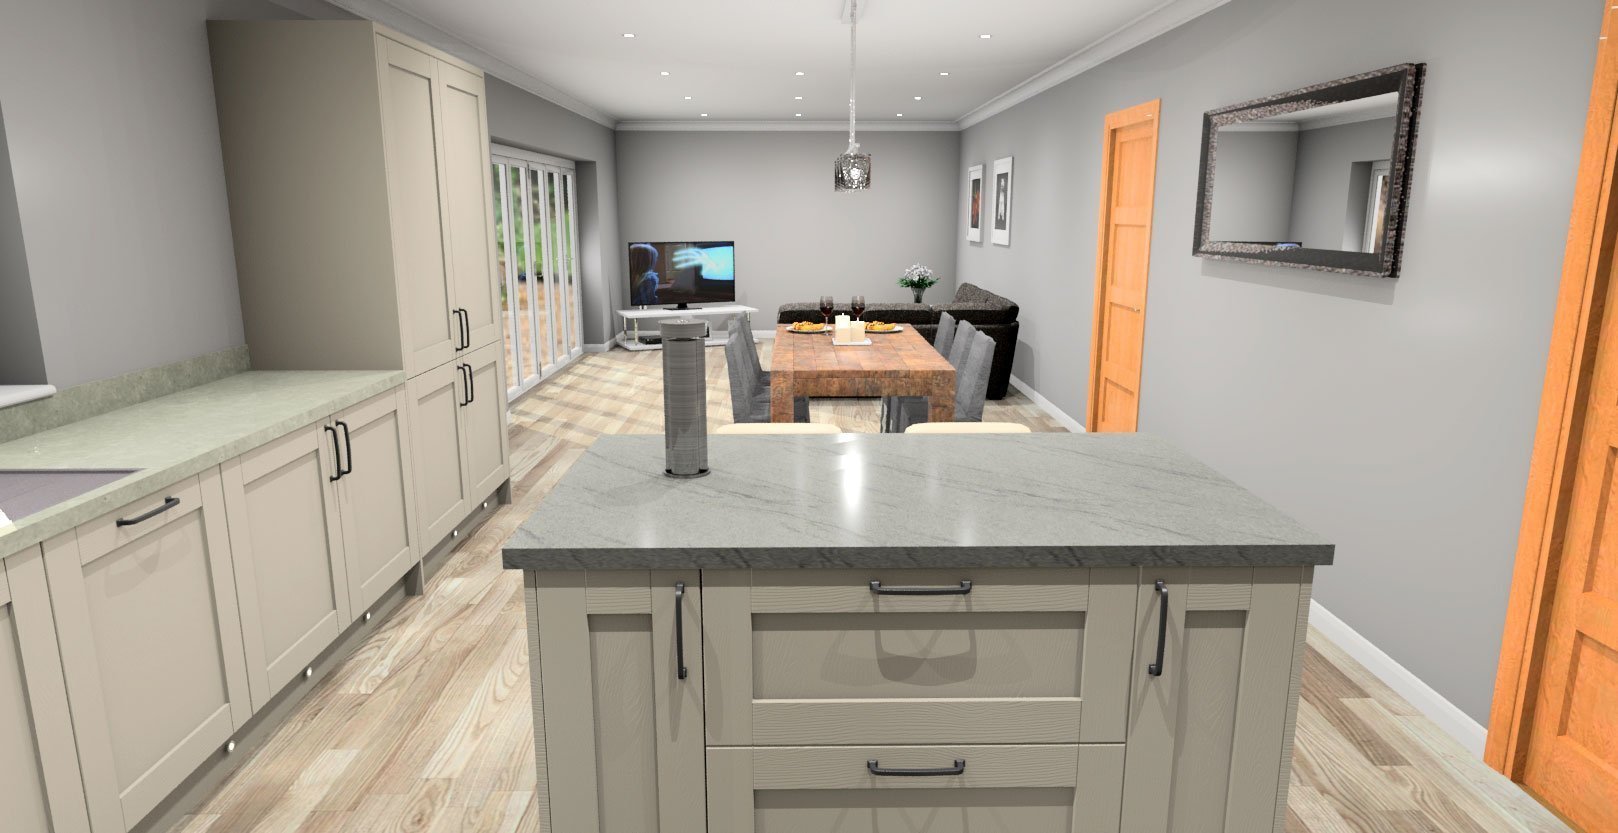 3D digital design of Kitchen Diner Area